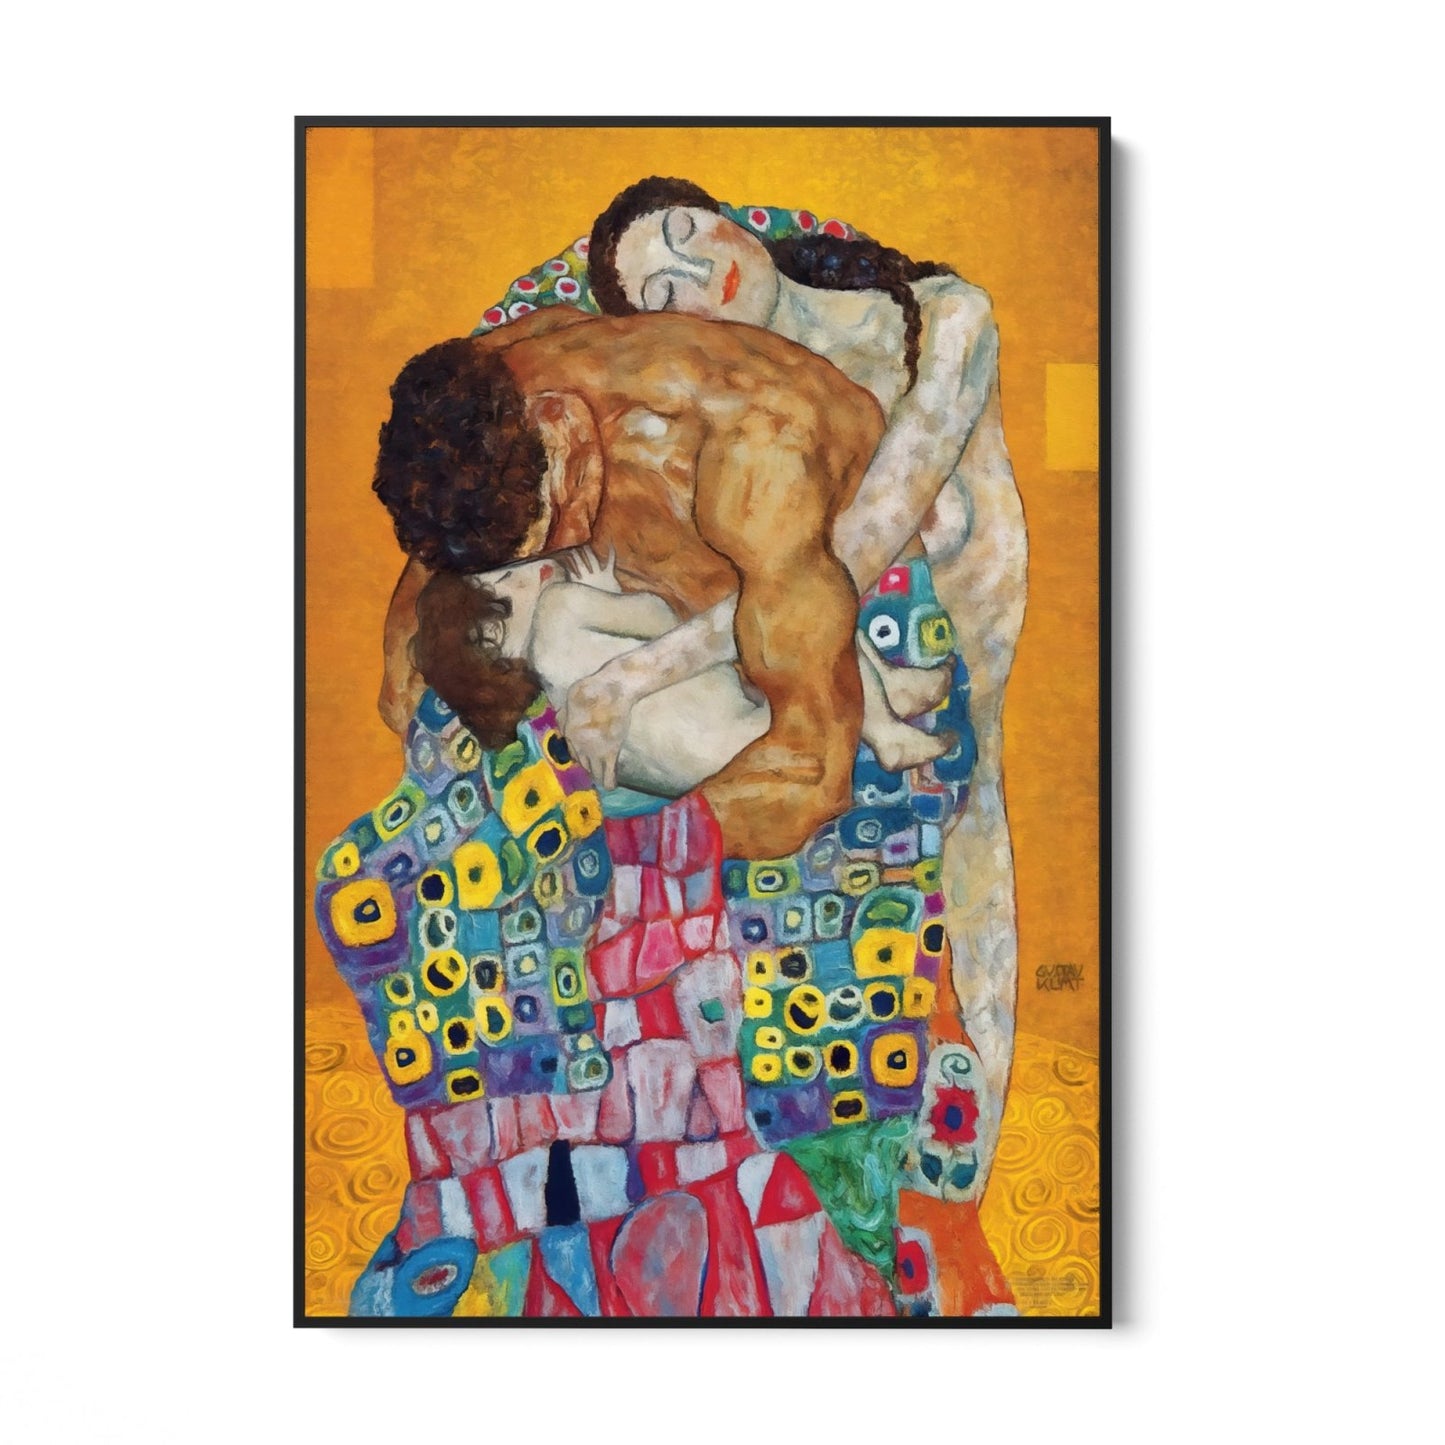 La familia, Klimt